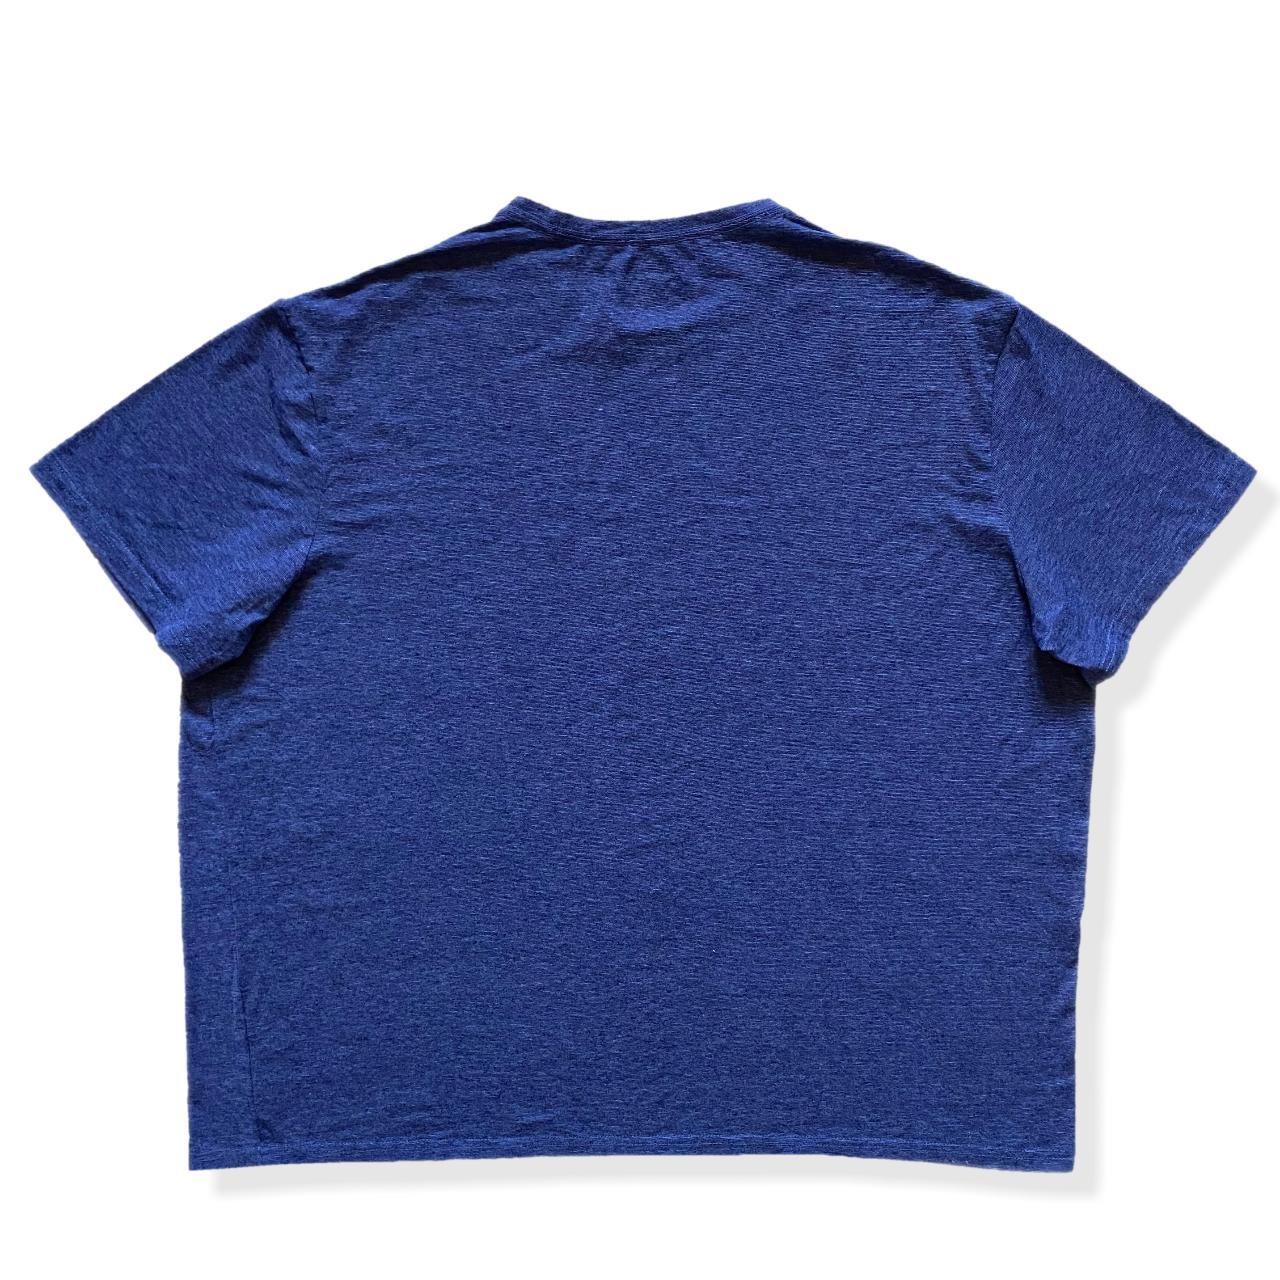 Lee T-Shirt 👼🏻 Lee blue striped short sleeve t shirt... - Depop